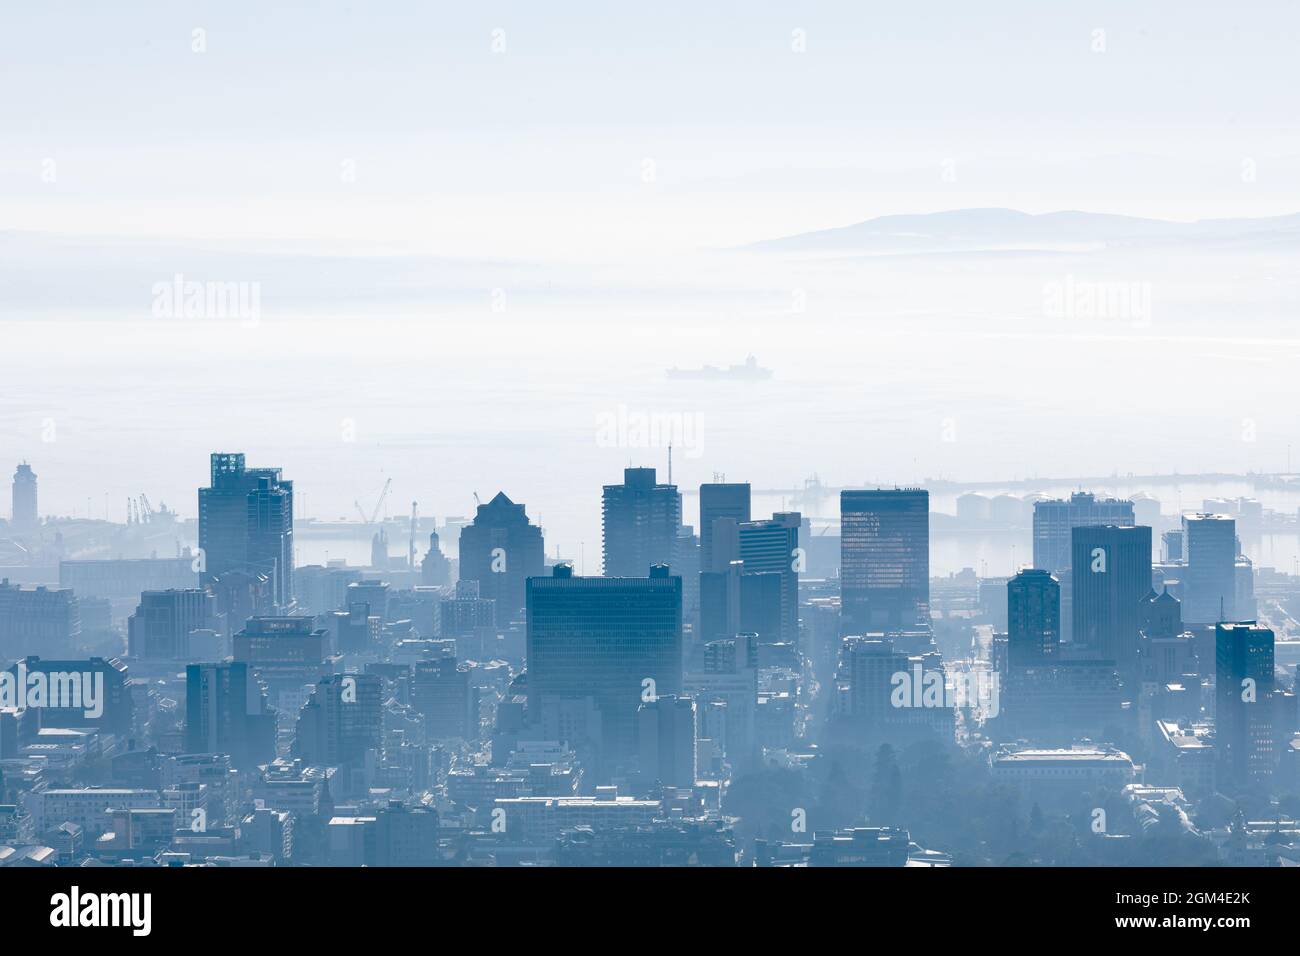 Vue générale sur le paysage urbain avec plusieurs bâtiments modernes et gratte-ciel le matin brumeux Banque D'Images